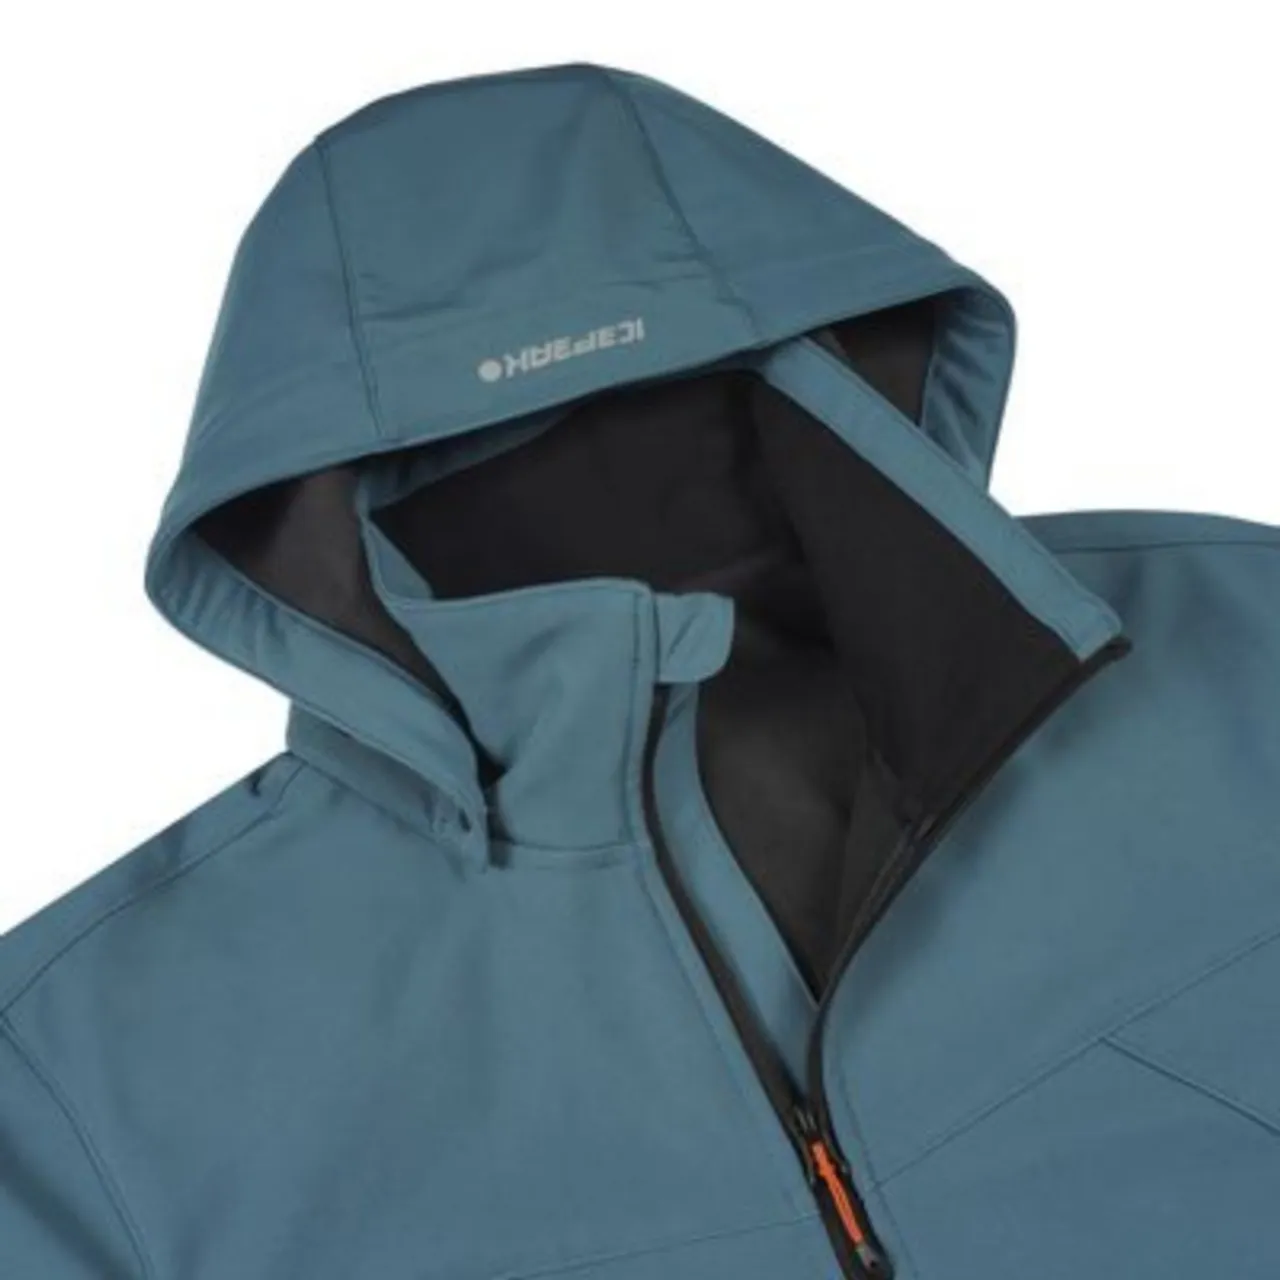 Icepeak brimfield softshell jacket -